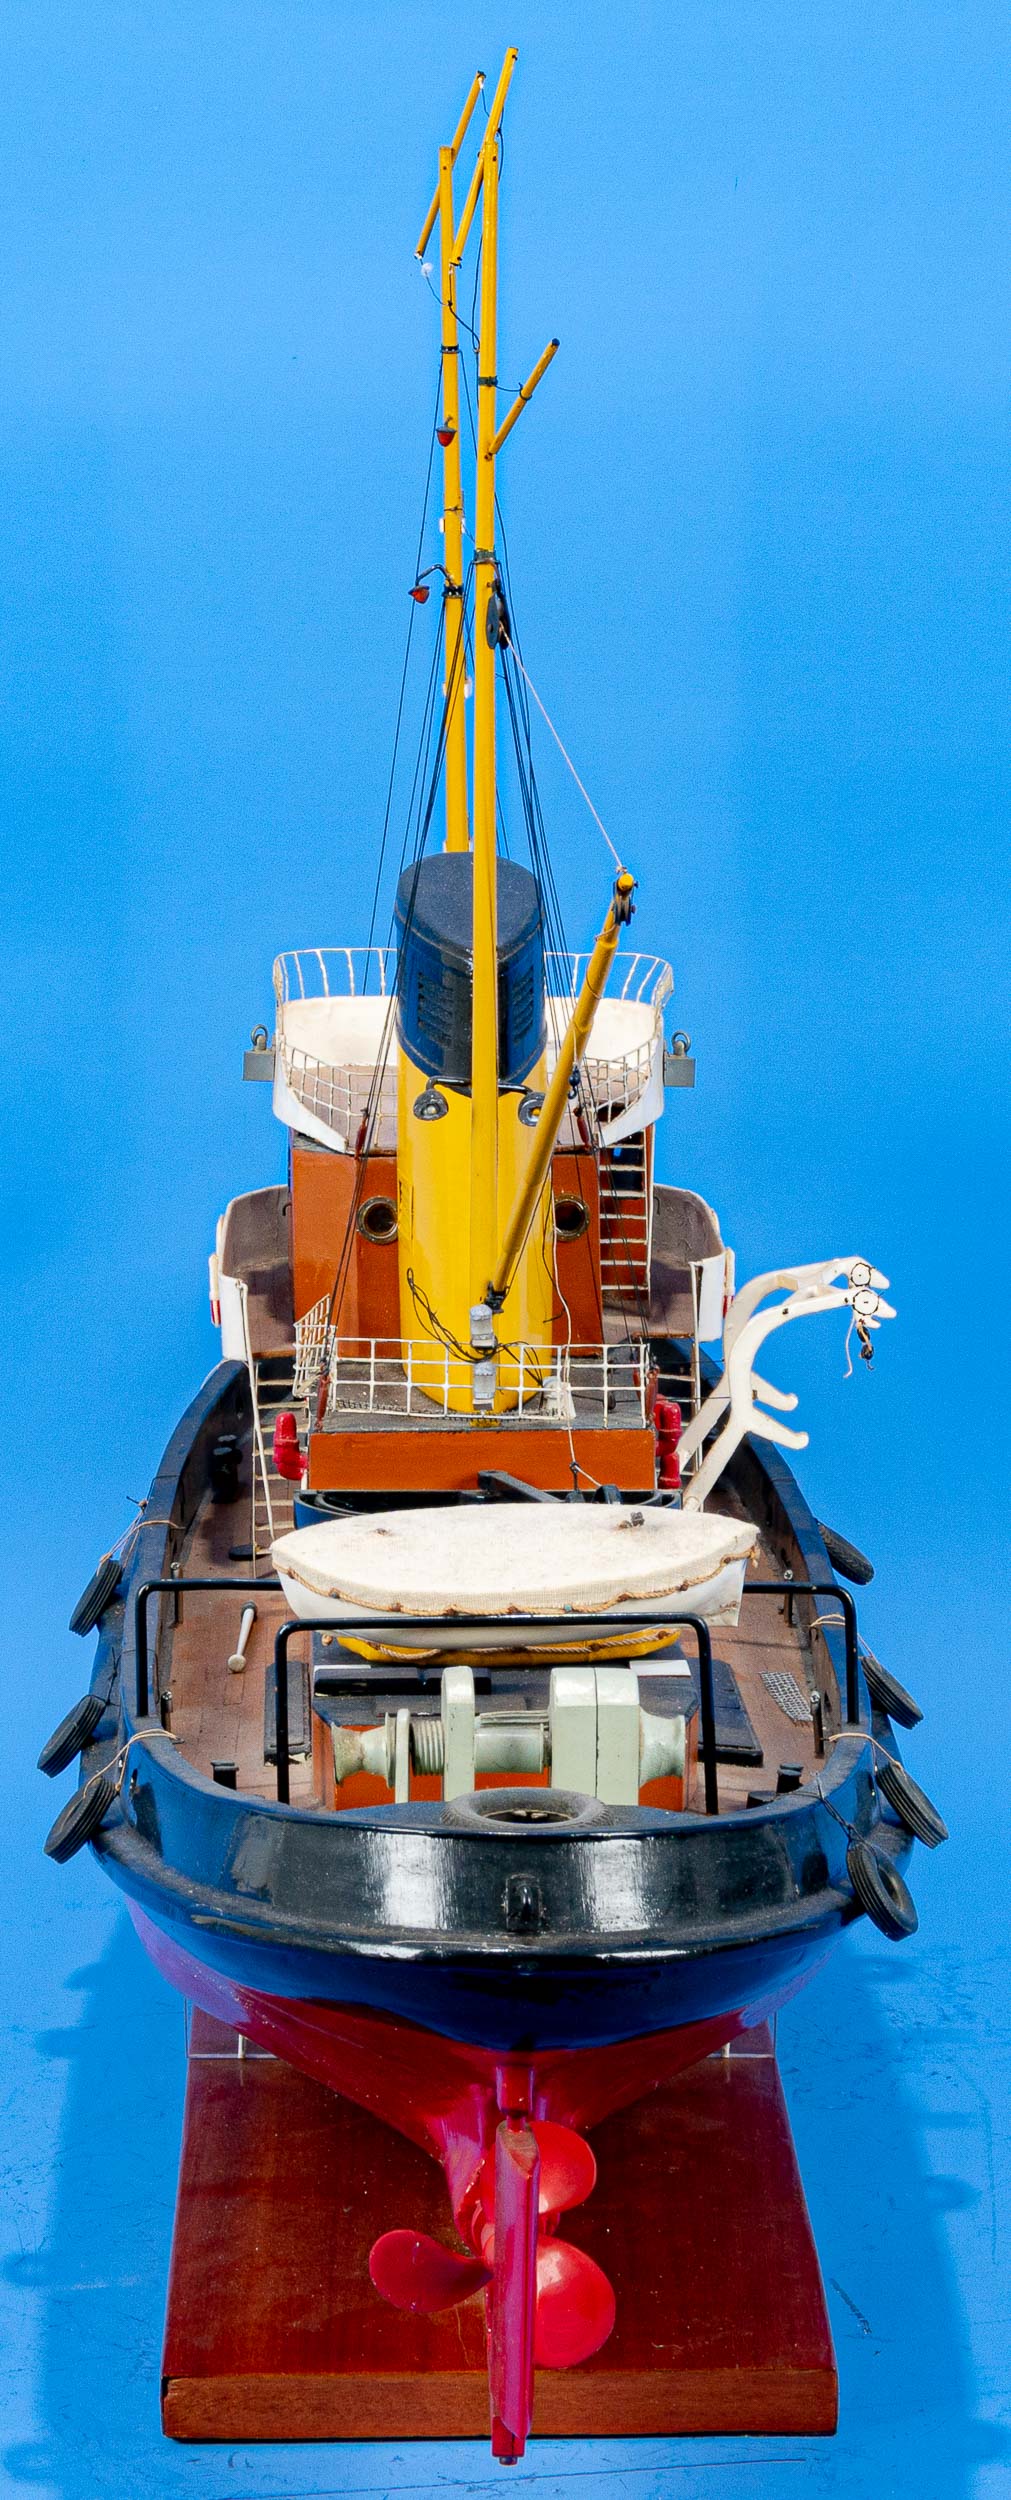 Modell eines Hafenschleppers, Eigenbau auf passend angefertigtem Stand; Befestigung des Beibootes - Image 13 of 14